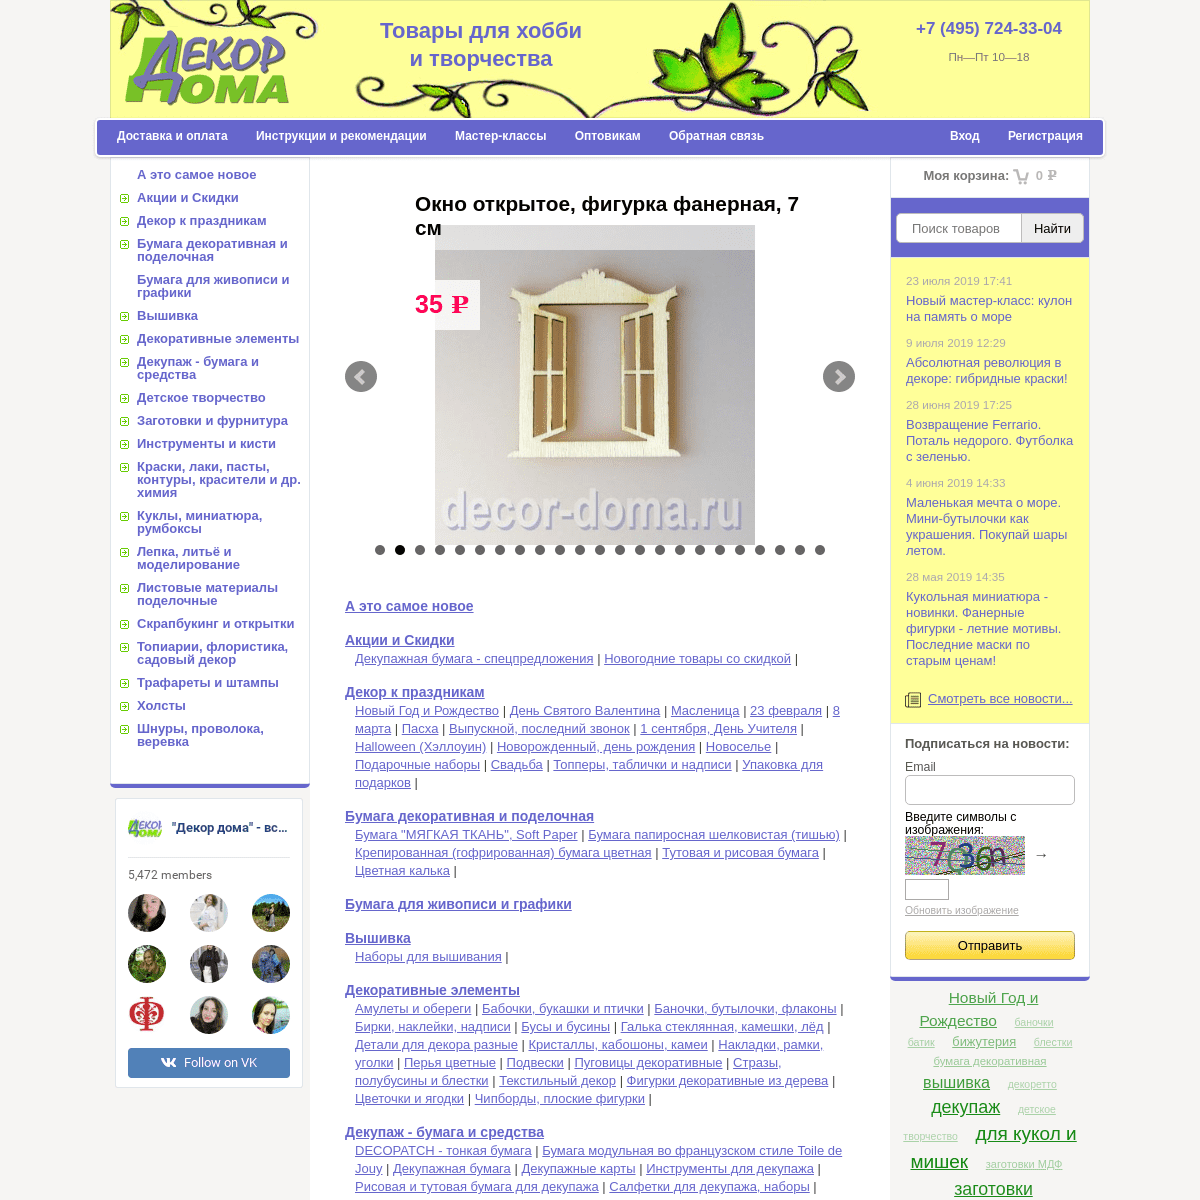 Декор Дома, интернет-магазин товаров для хобби, декорирования и рукоделия